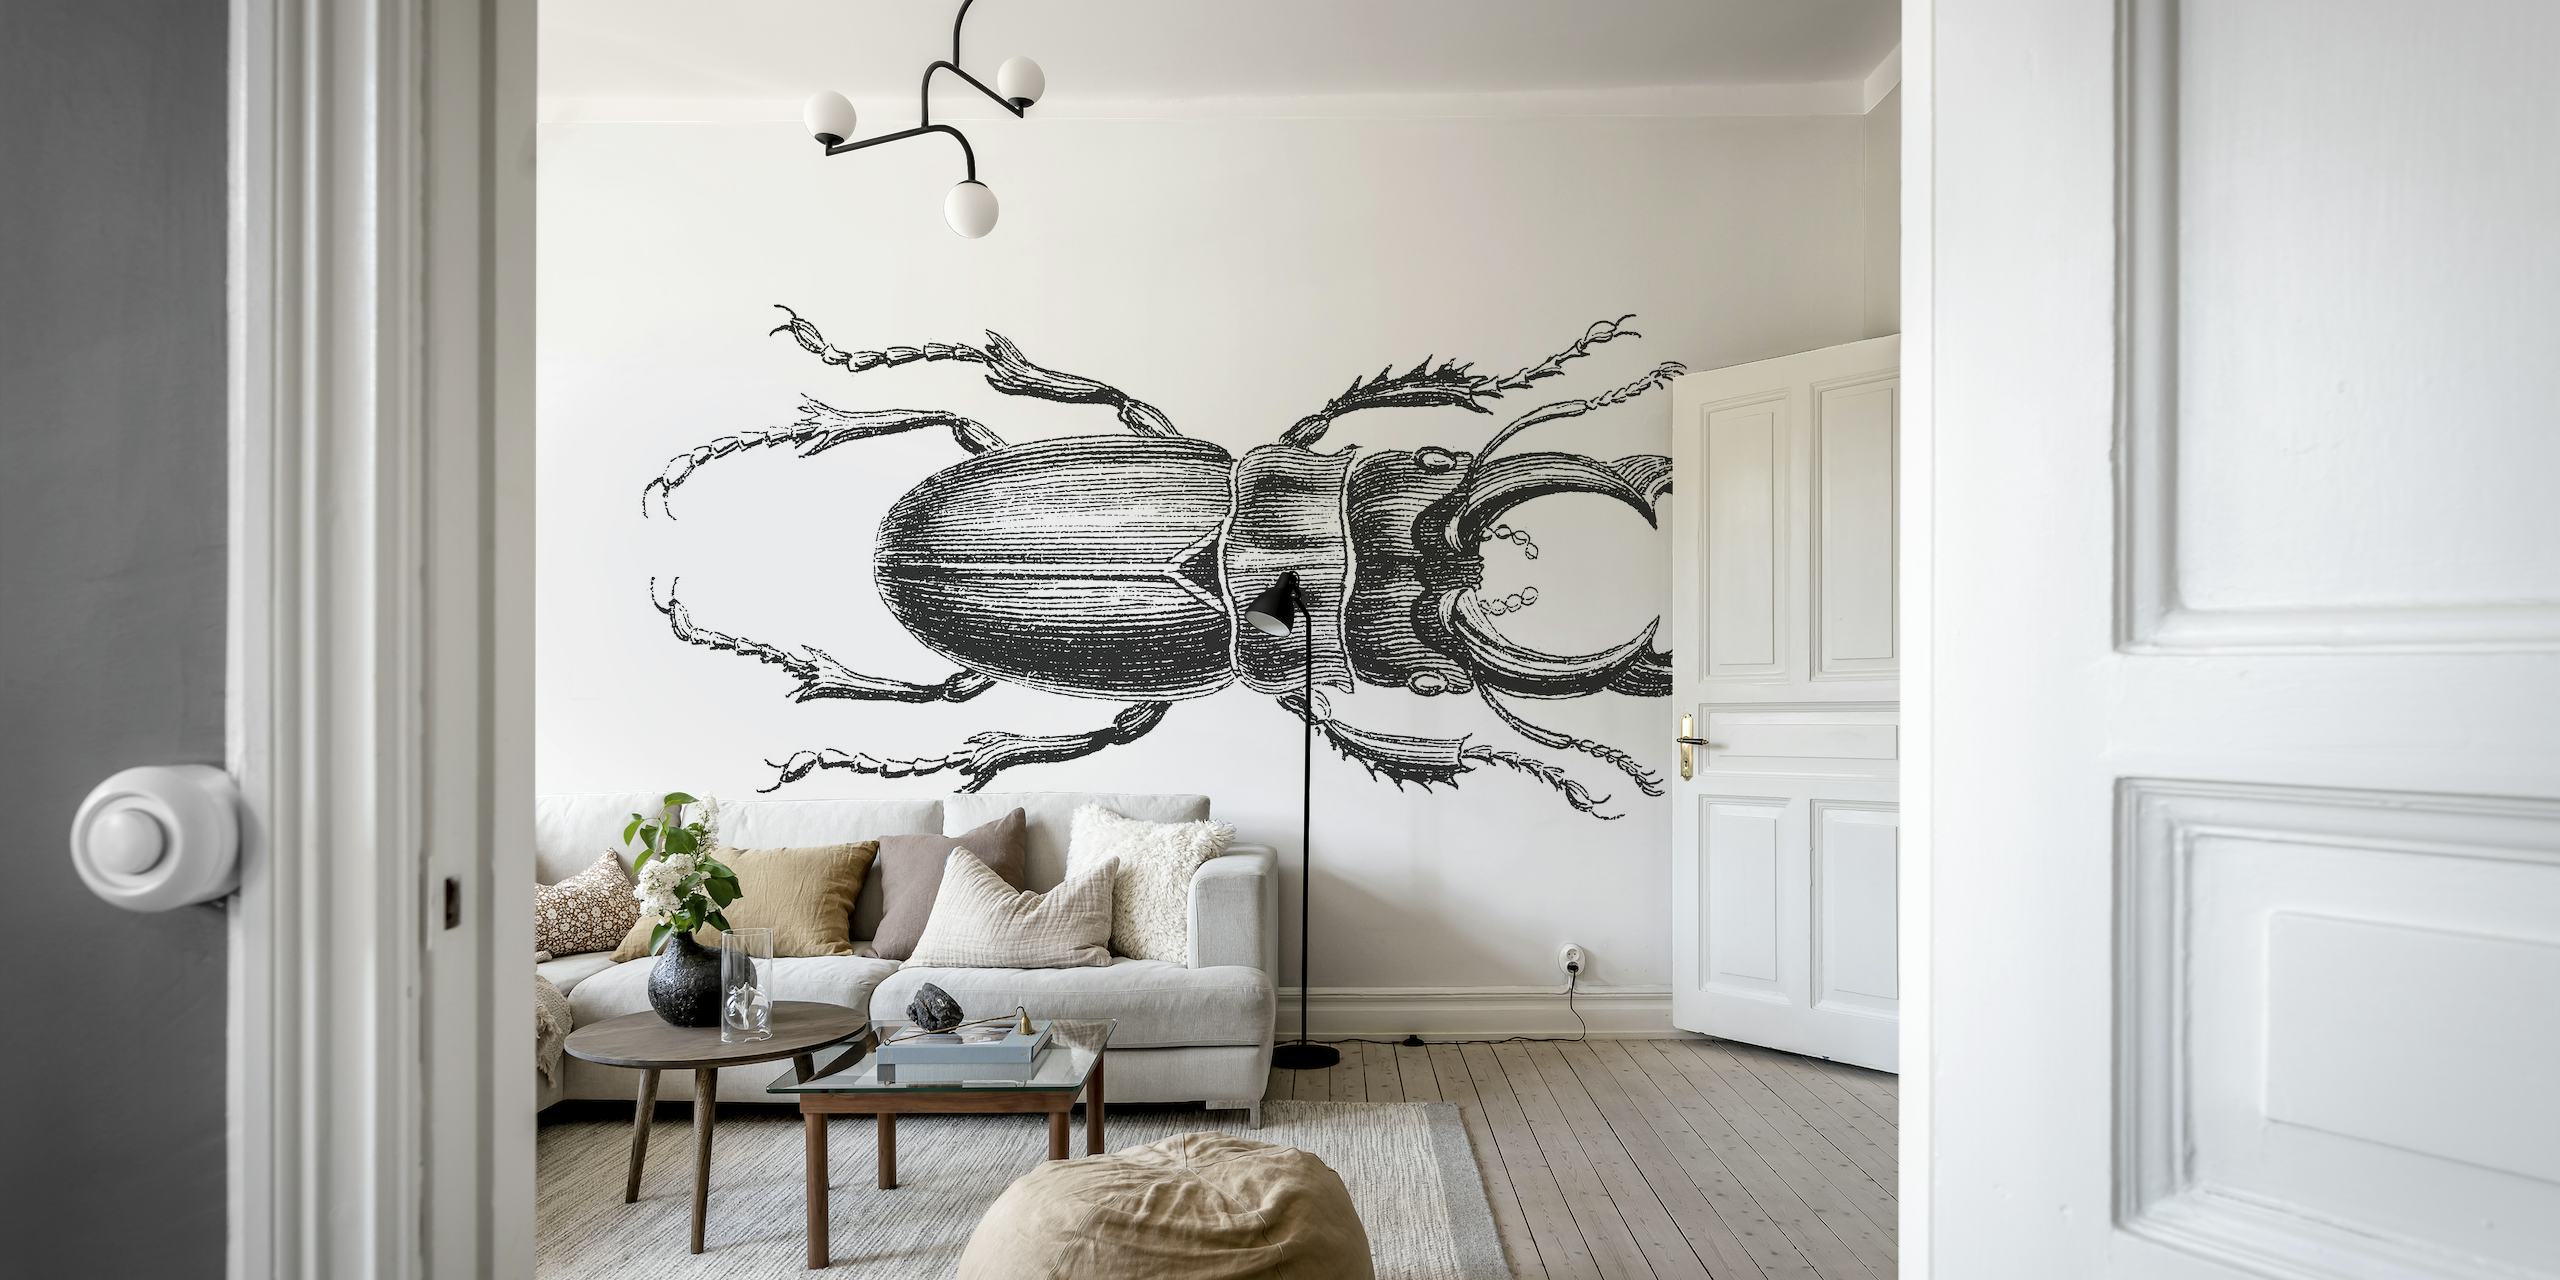 Stag Beetle Drawing muurschildering in zwart-wit schetsstijl